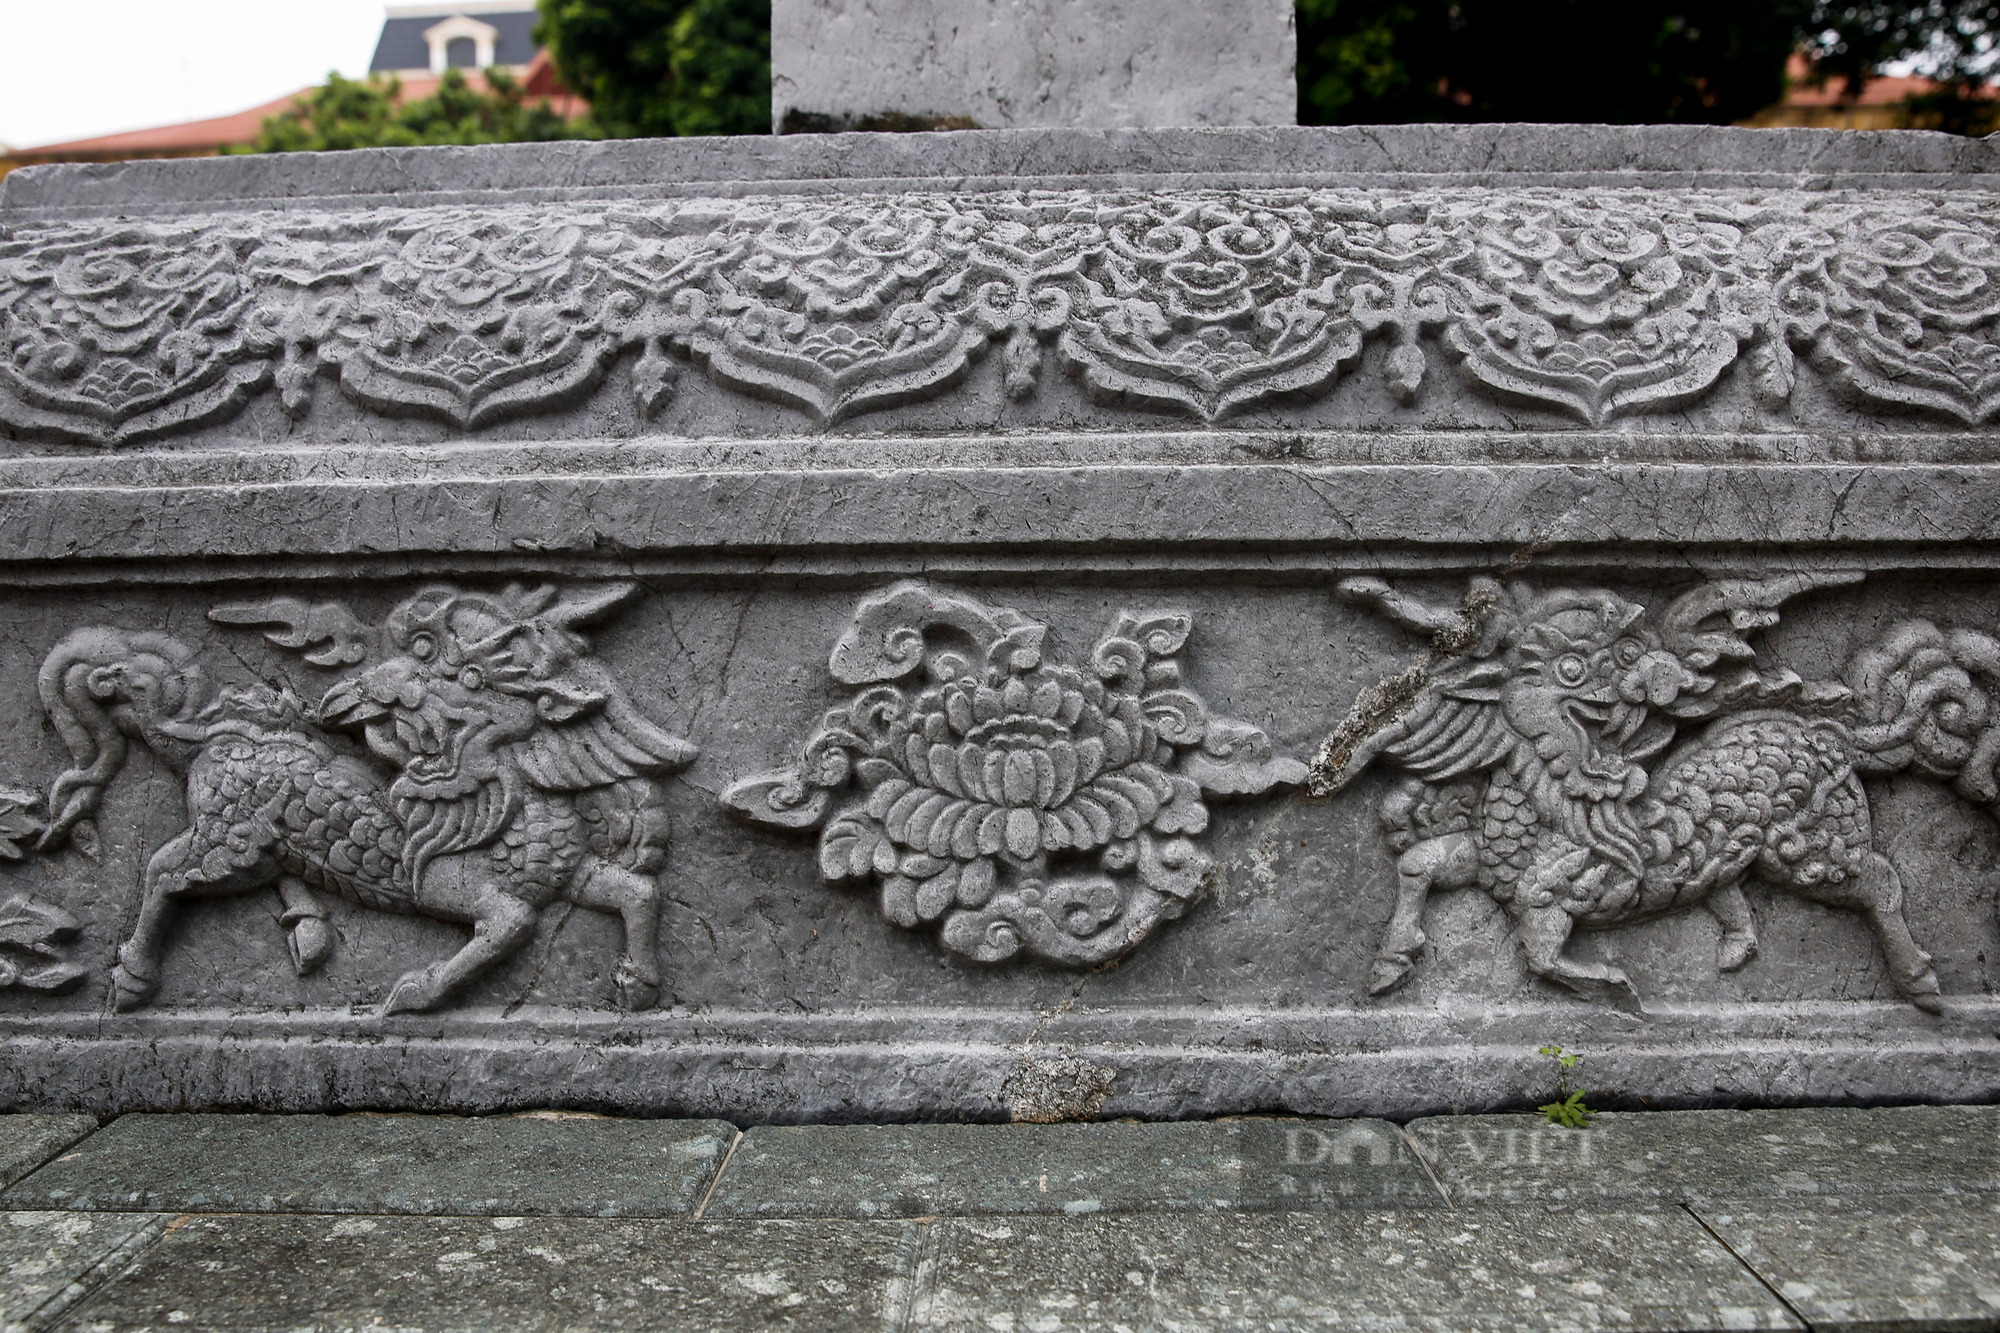 Cận cảnh Bảo vật quốc gia: Bia điện Nam Giao - đàn tế trời đất của Thăng Long xưa - Ảnh 4.